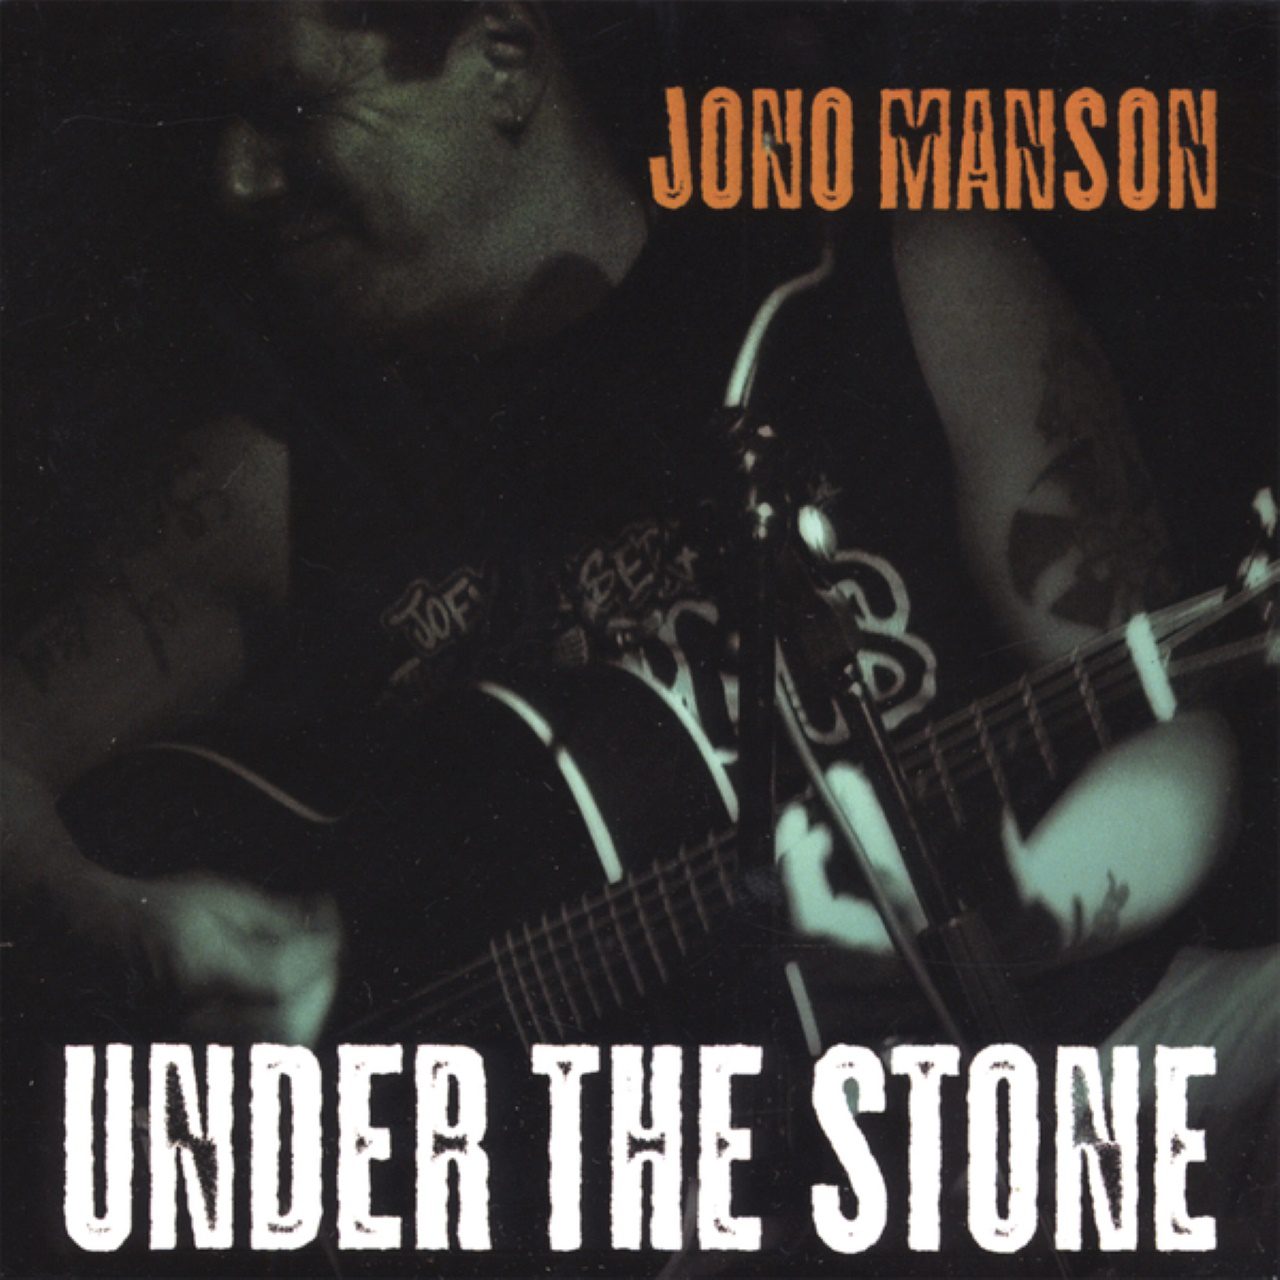 Jono Manson – Under The Stone cover album